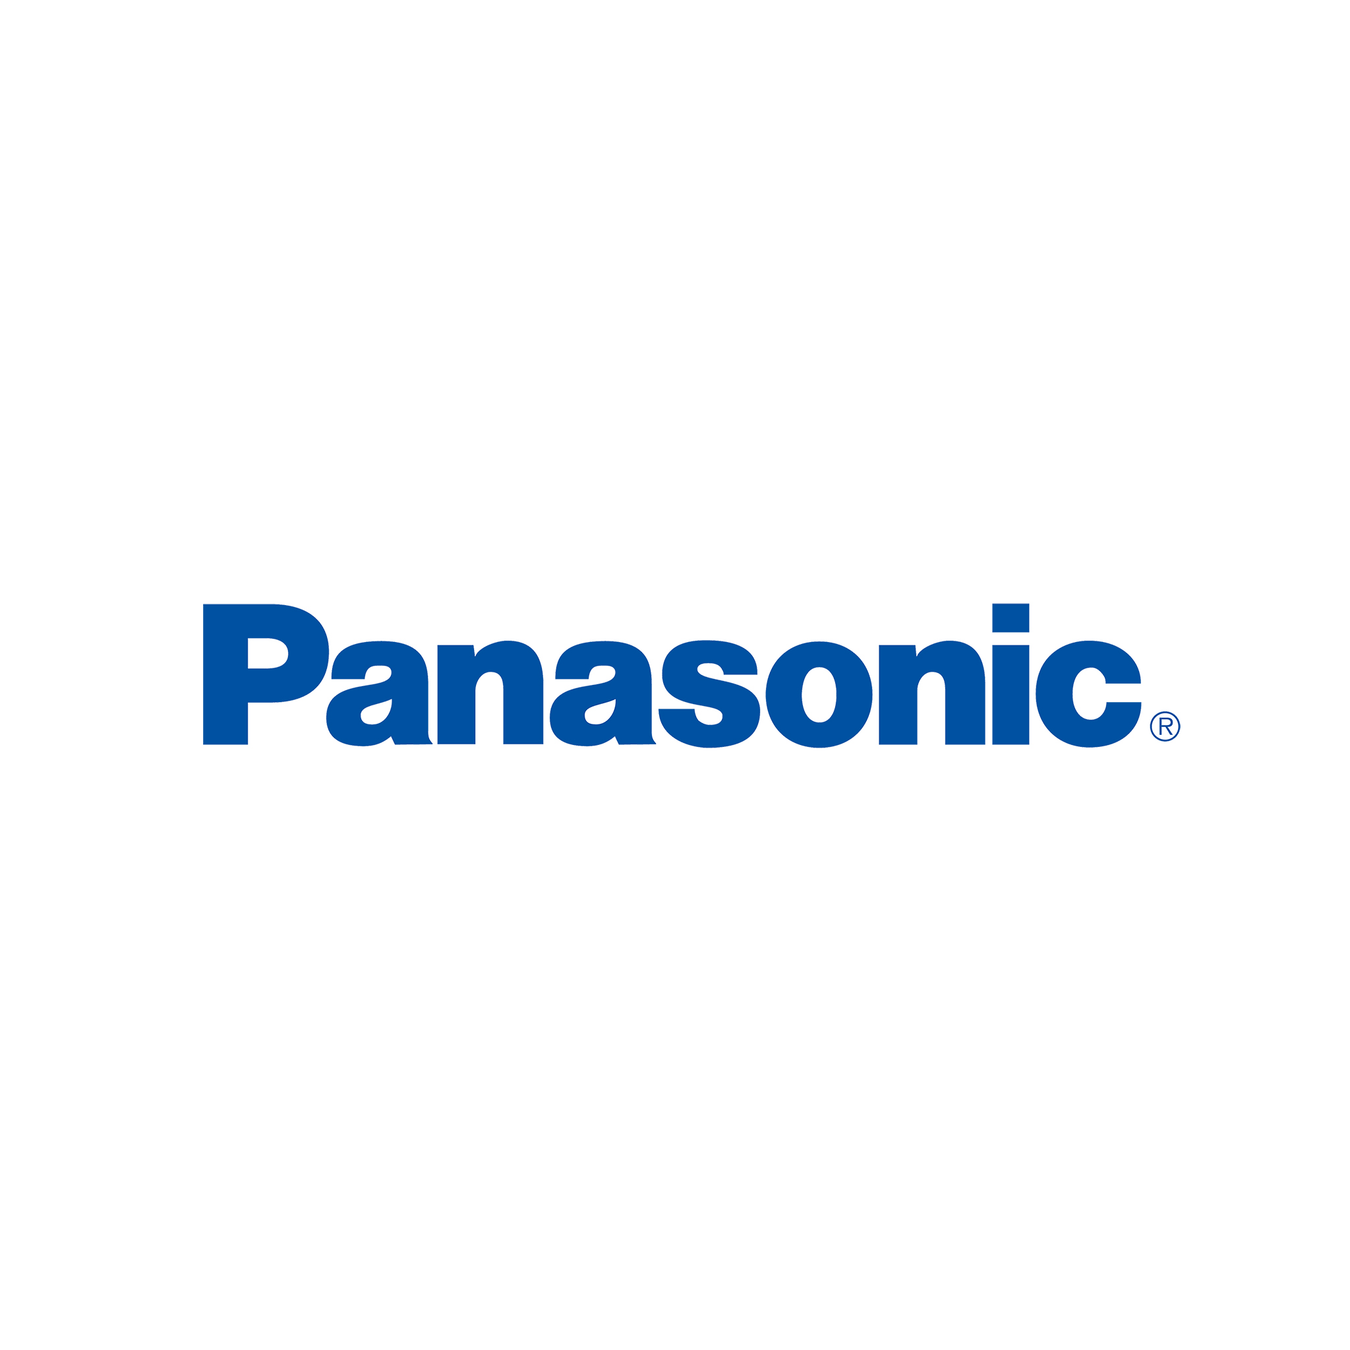 Panasonic - Gecko Catering Equipment